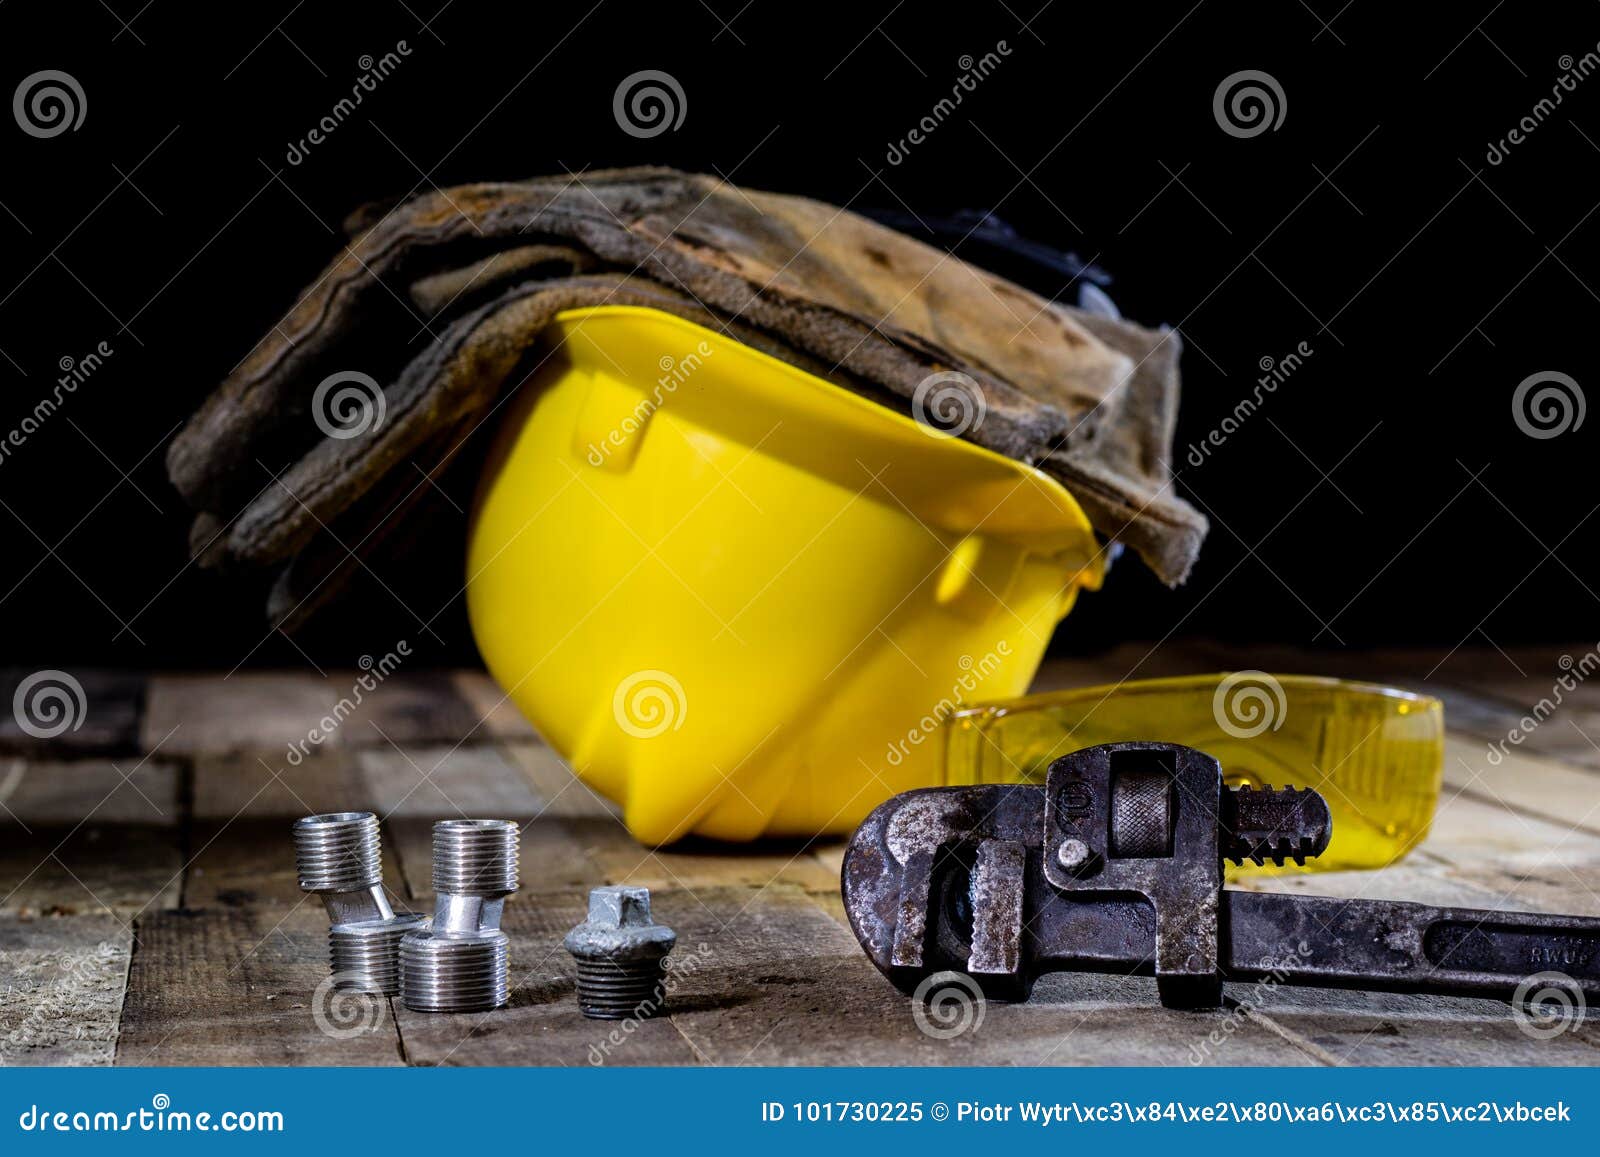 L'hydraulique, outils pour le plombier sur la table en bois L'atelier, ajournent a. L'hydraulique, outils pour le plombier sur la table en bois Atelier, table et outils - clé réglable, connecteurs, clés Fond noir